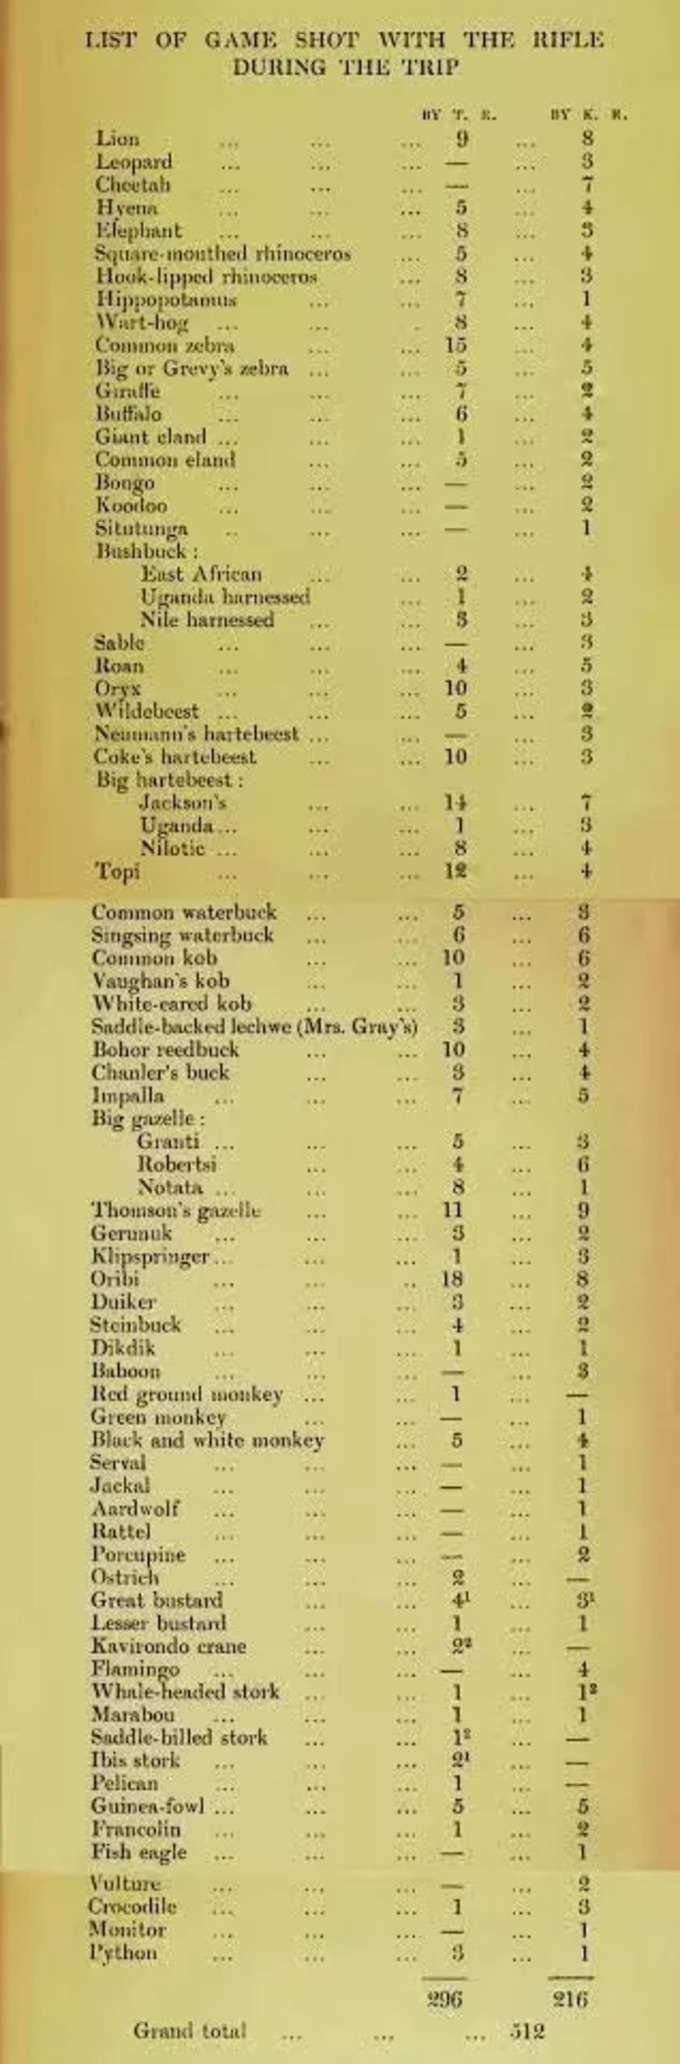 థియోడర్ రూజ్ వెల్ట్ ఆయన కొడుకు ఇద్దరూ ఆఫ్రికా సఫారీలో చంపిన జంతువుల జాబితా ఇది. మొత్తం 512 జంతువులు. దారుణం కదా.